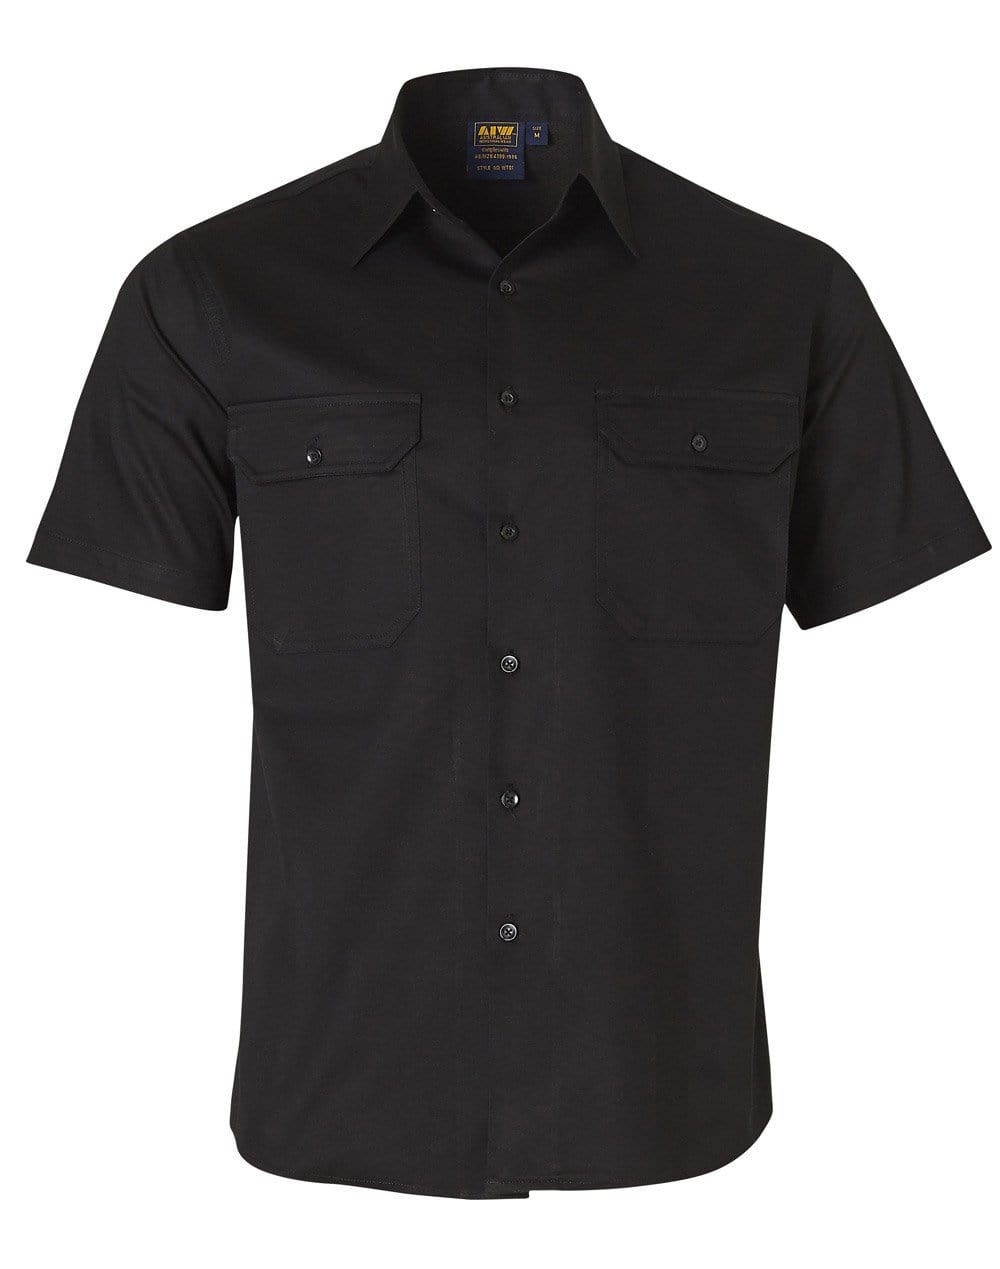 Cotton Work Shirt WT01 Work Wear Australian Industrial Wear S Black 